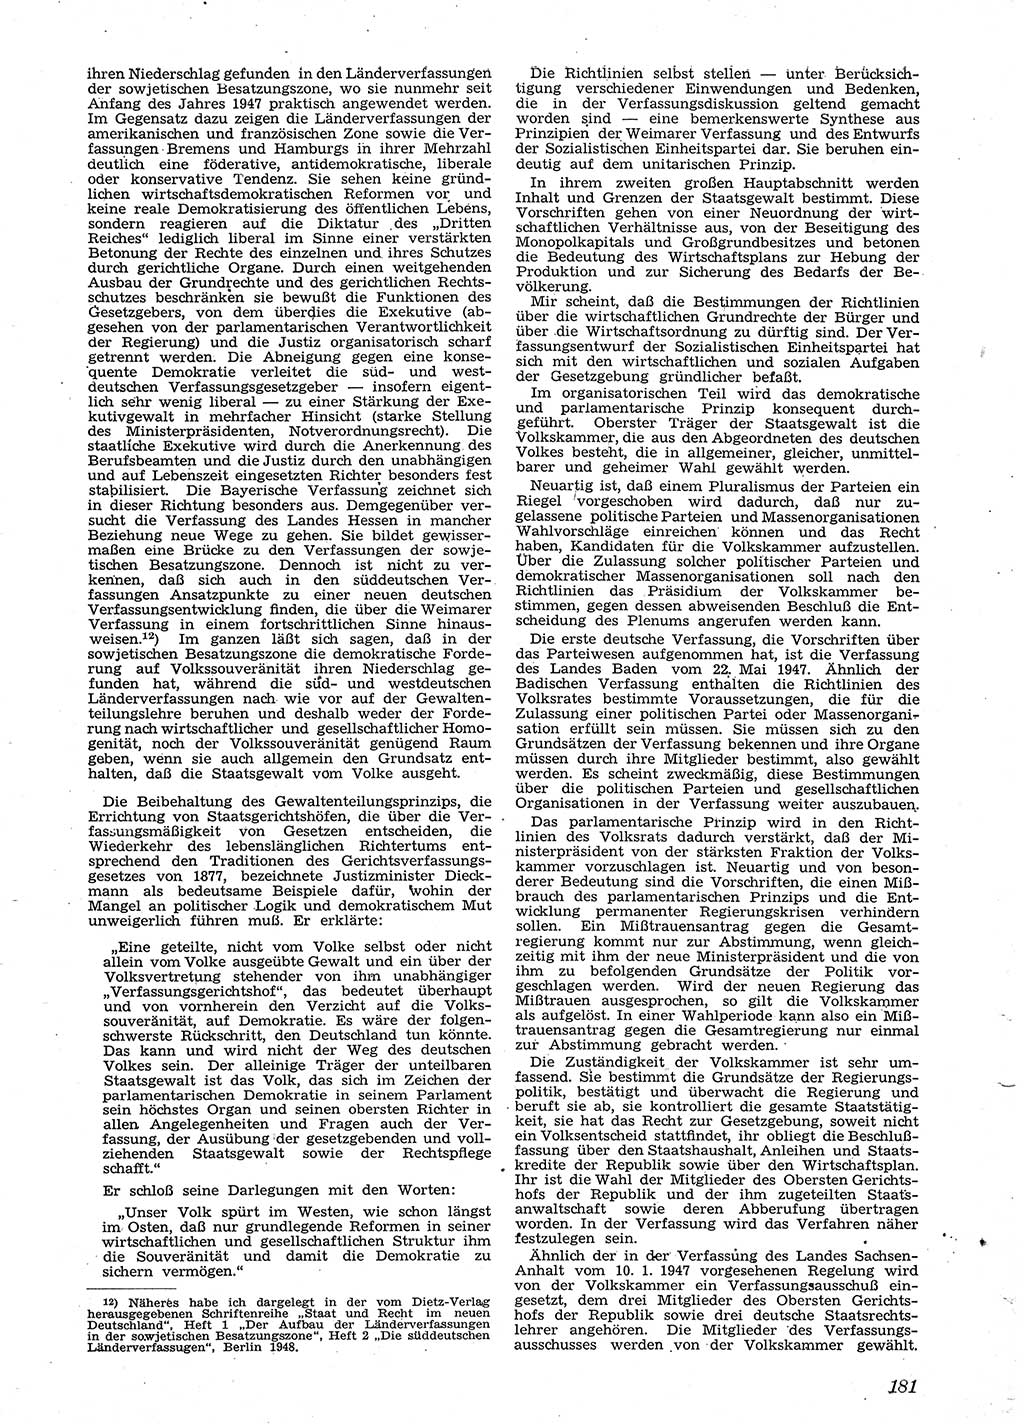 Neue Justiz (NJ), Zeitschrift für Recht und Rechtswissenschaft [Sowjetische Besatzungszone (SBZ) Deutschland], 2. Jahrgang 1948, Seite 181 (NJ SBZ Dtl. 1948, S. 181)